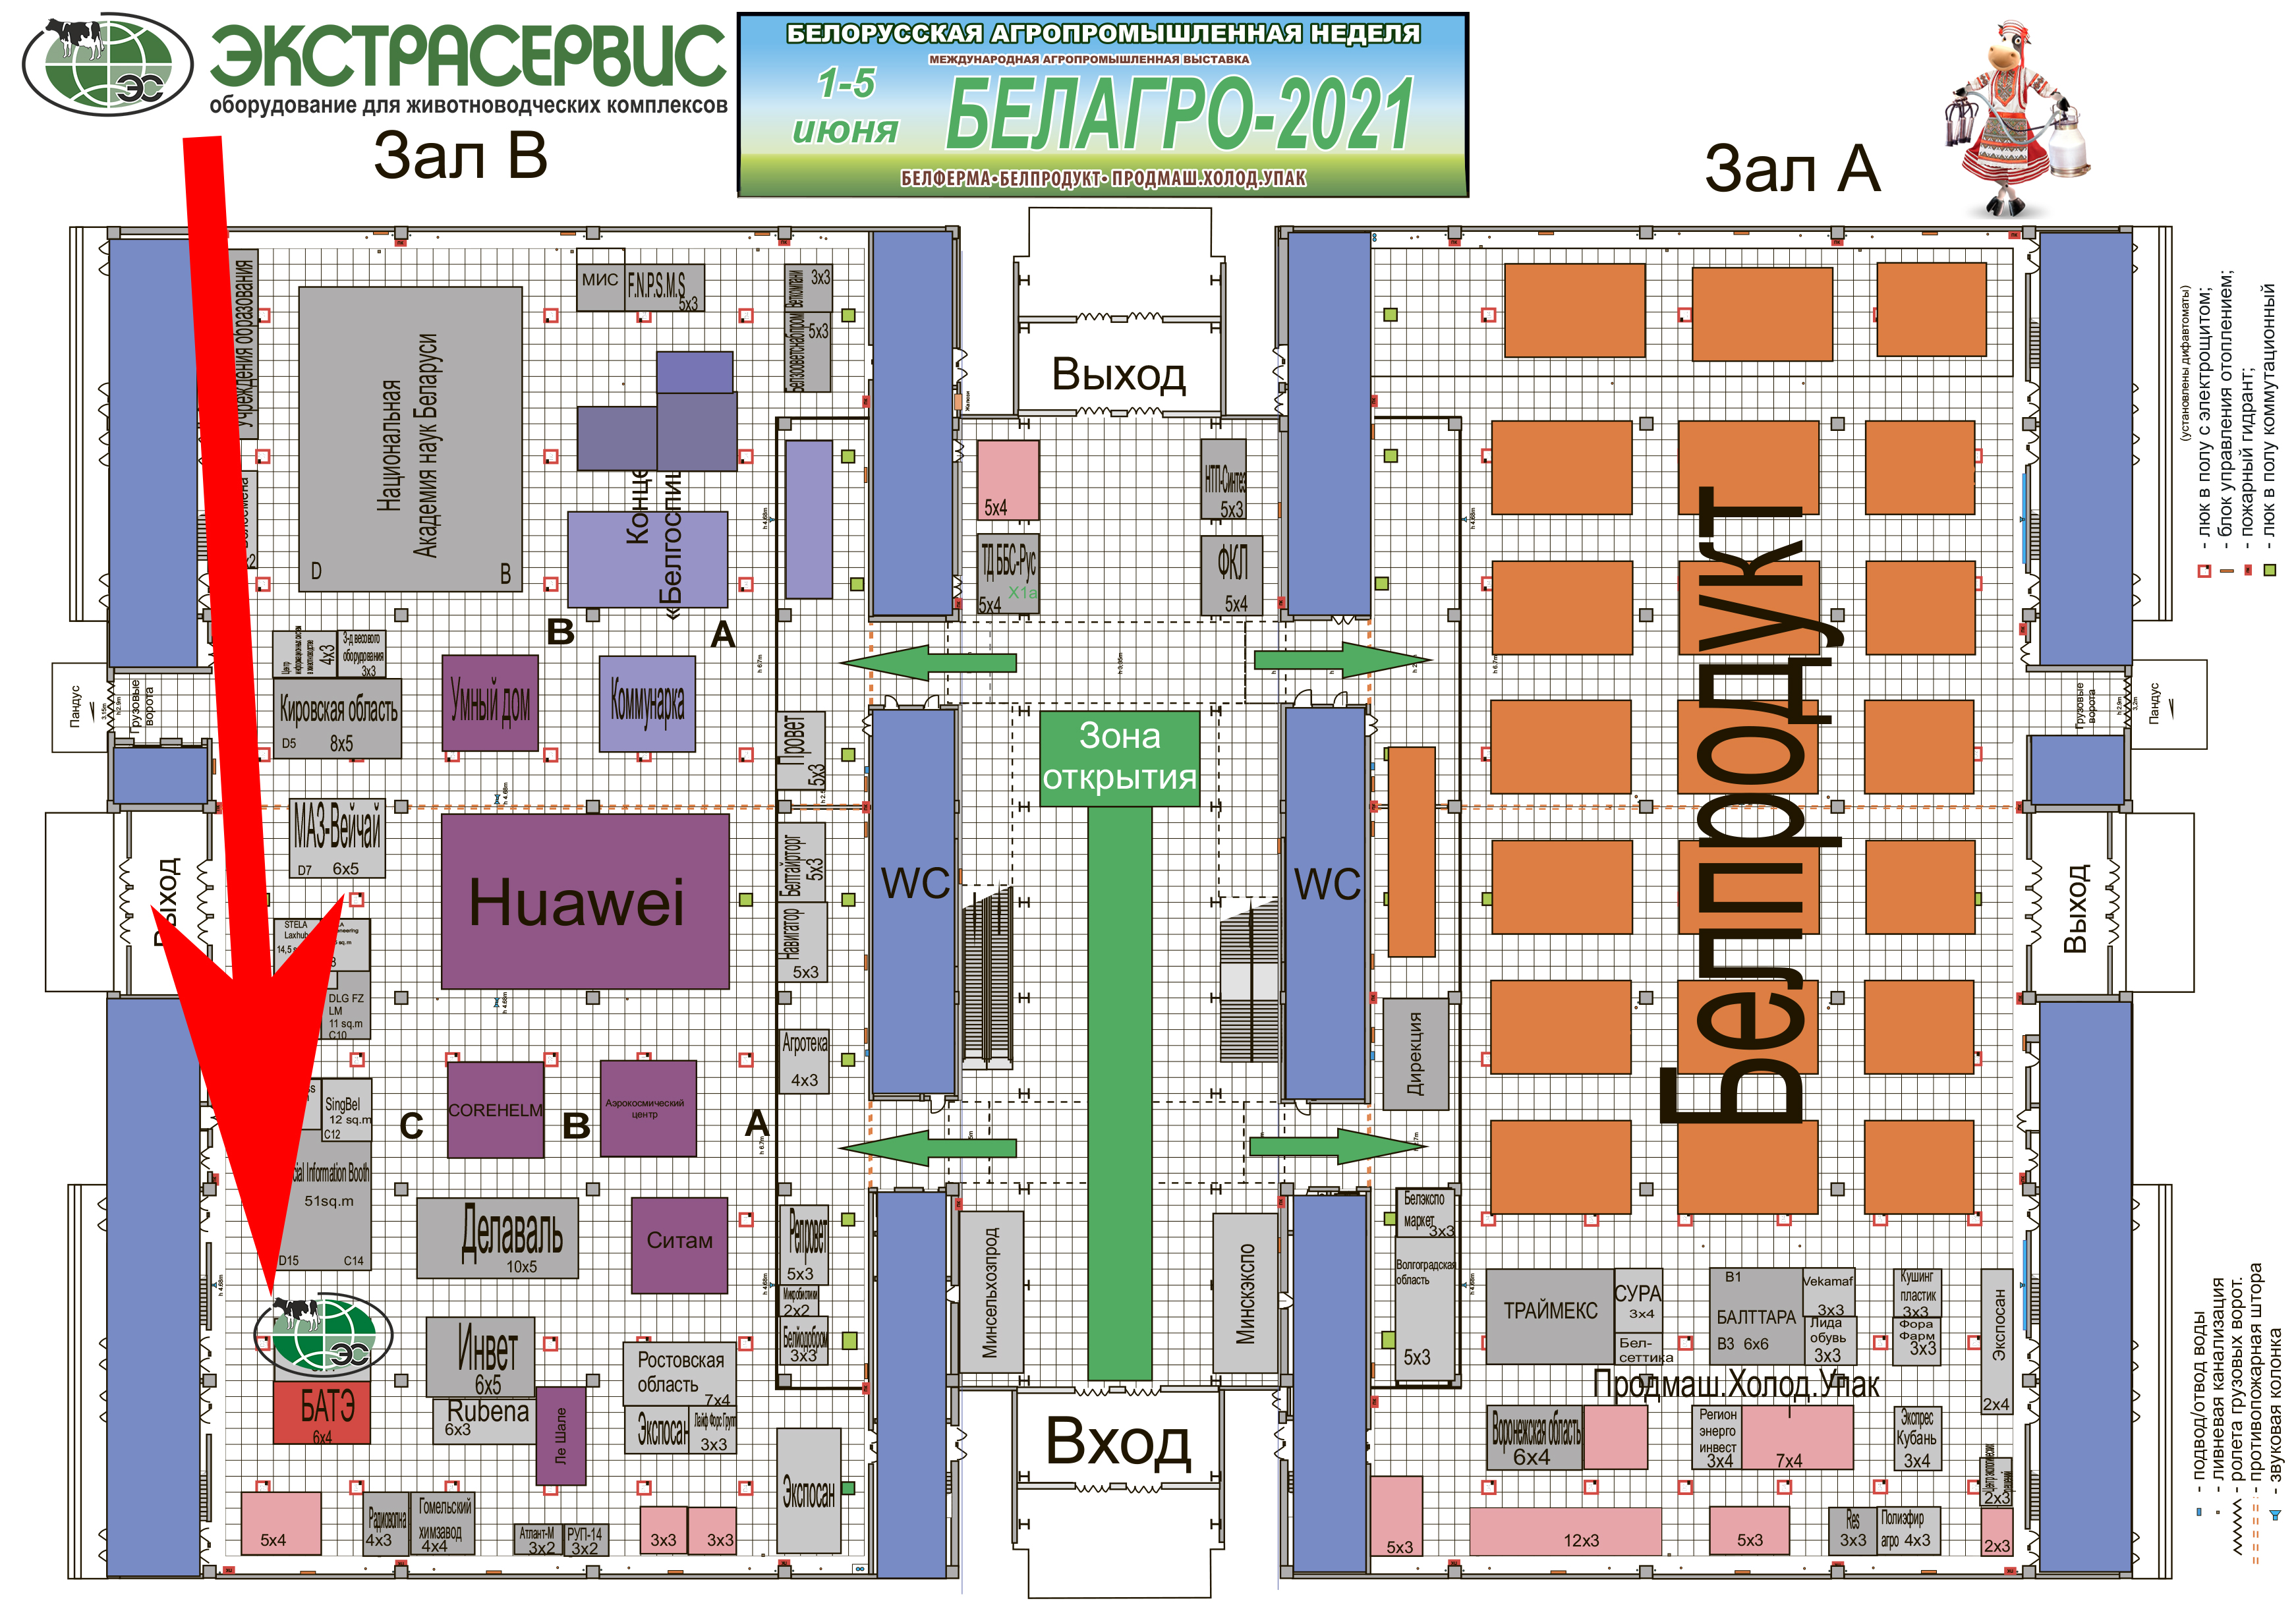 Схема расположения стенда Экстрасервис на Белагро 2021